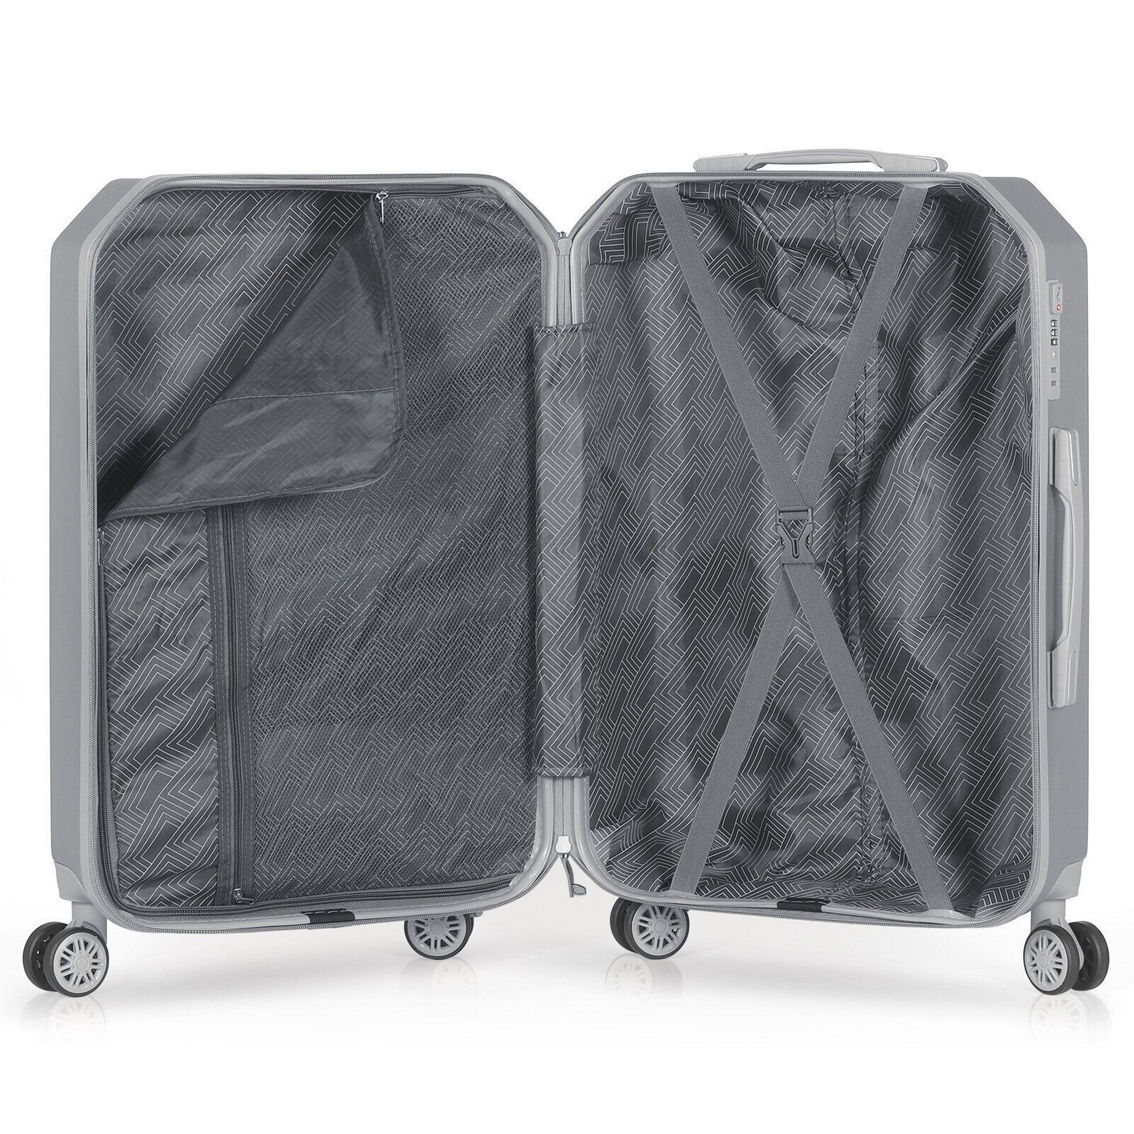 Hikolayae Crossroad Collection Hardside Luggage 5 Piece set - Image 4 of 5